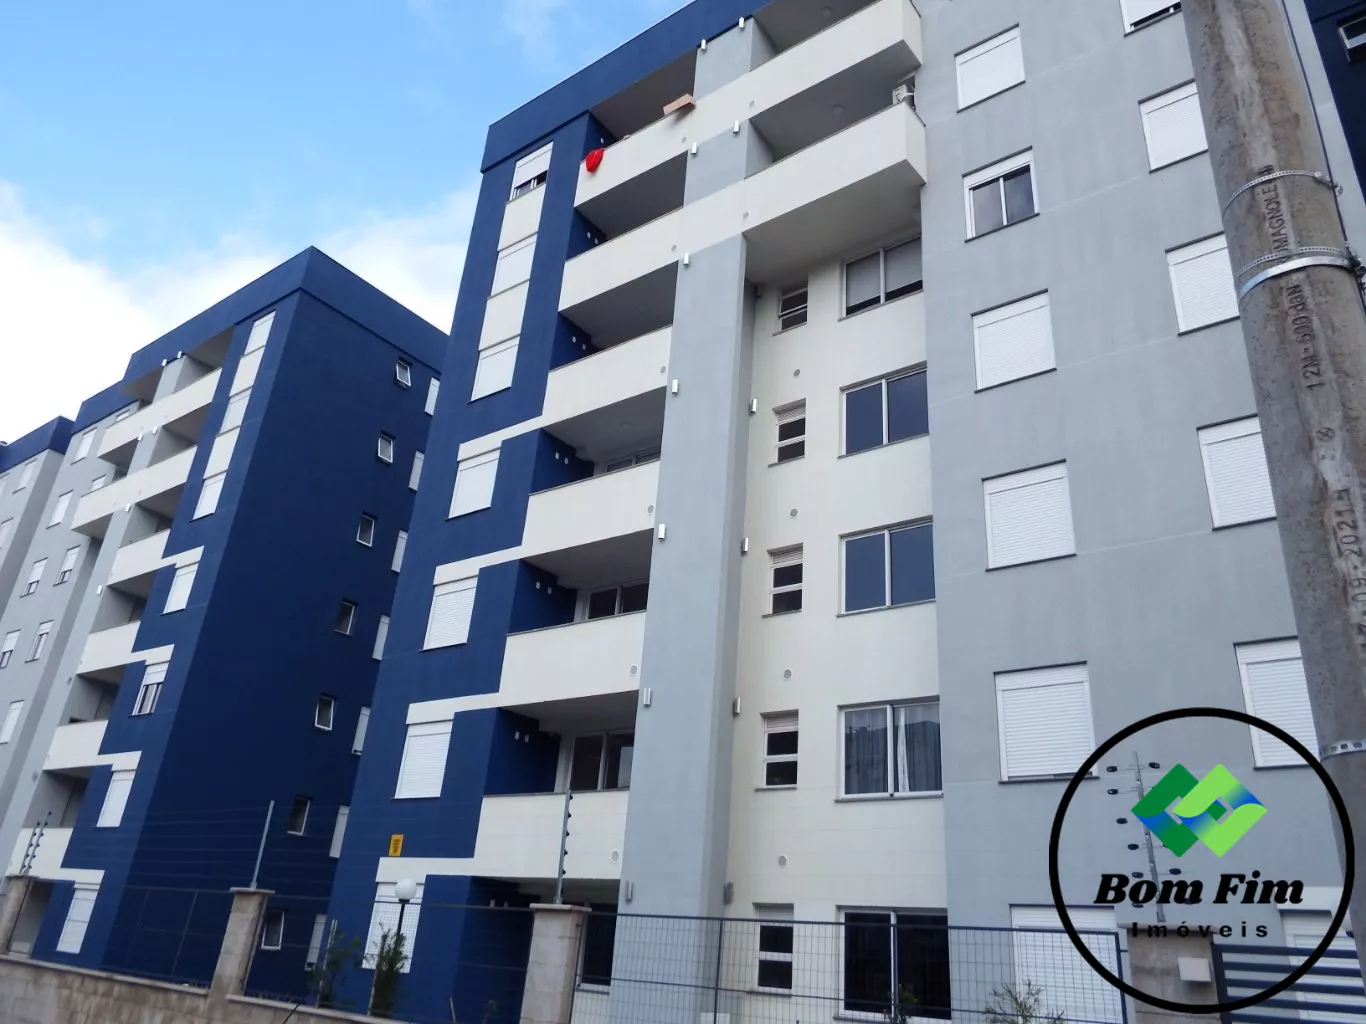 Apartamento em Olaria, Canoas/RS de 47m² 2 quartos para locação R$ 700,00/mes